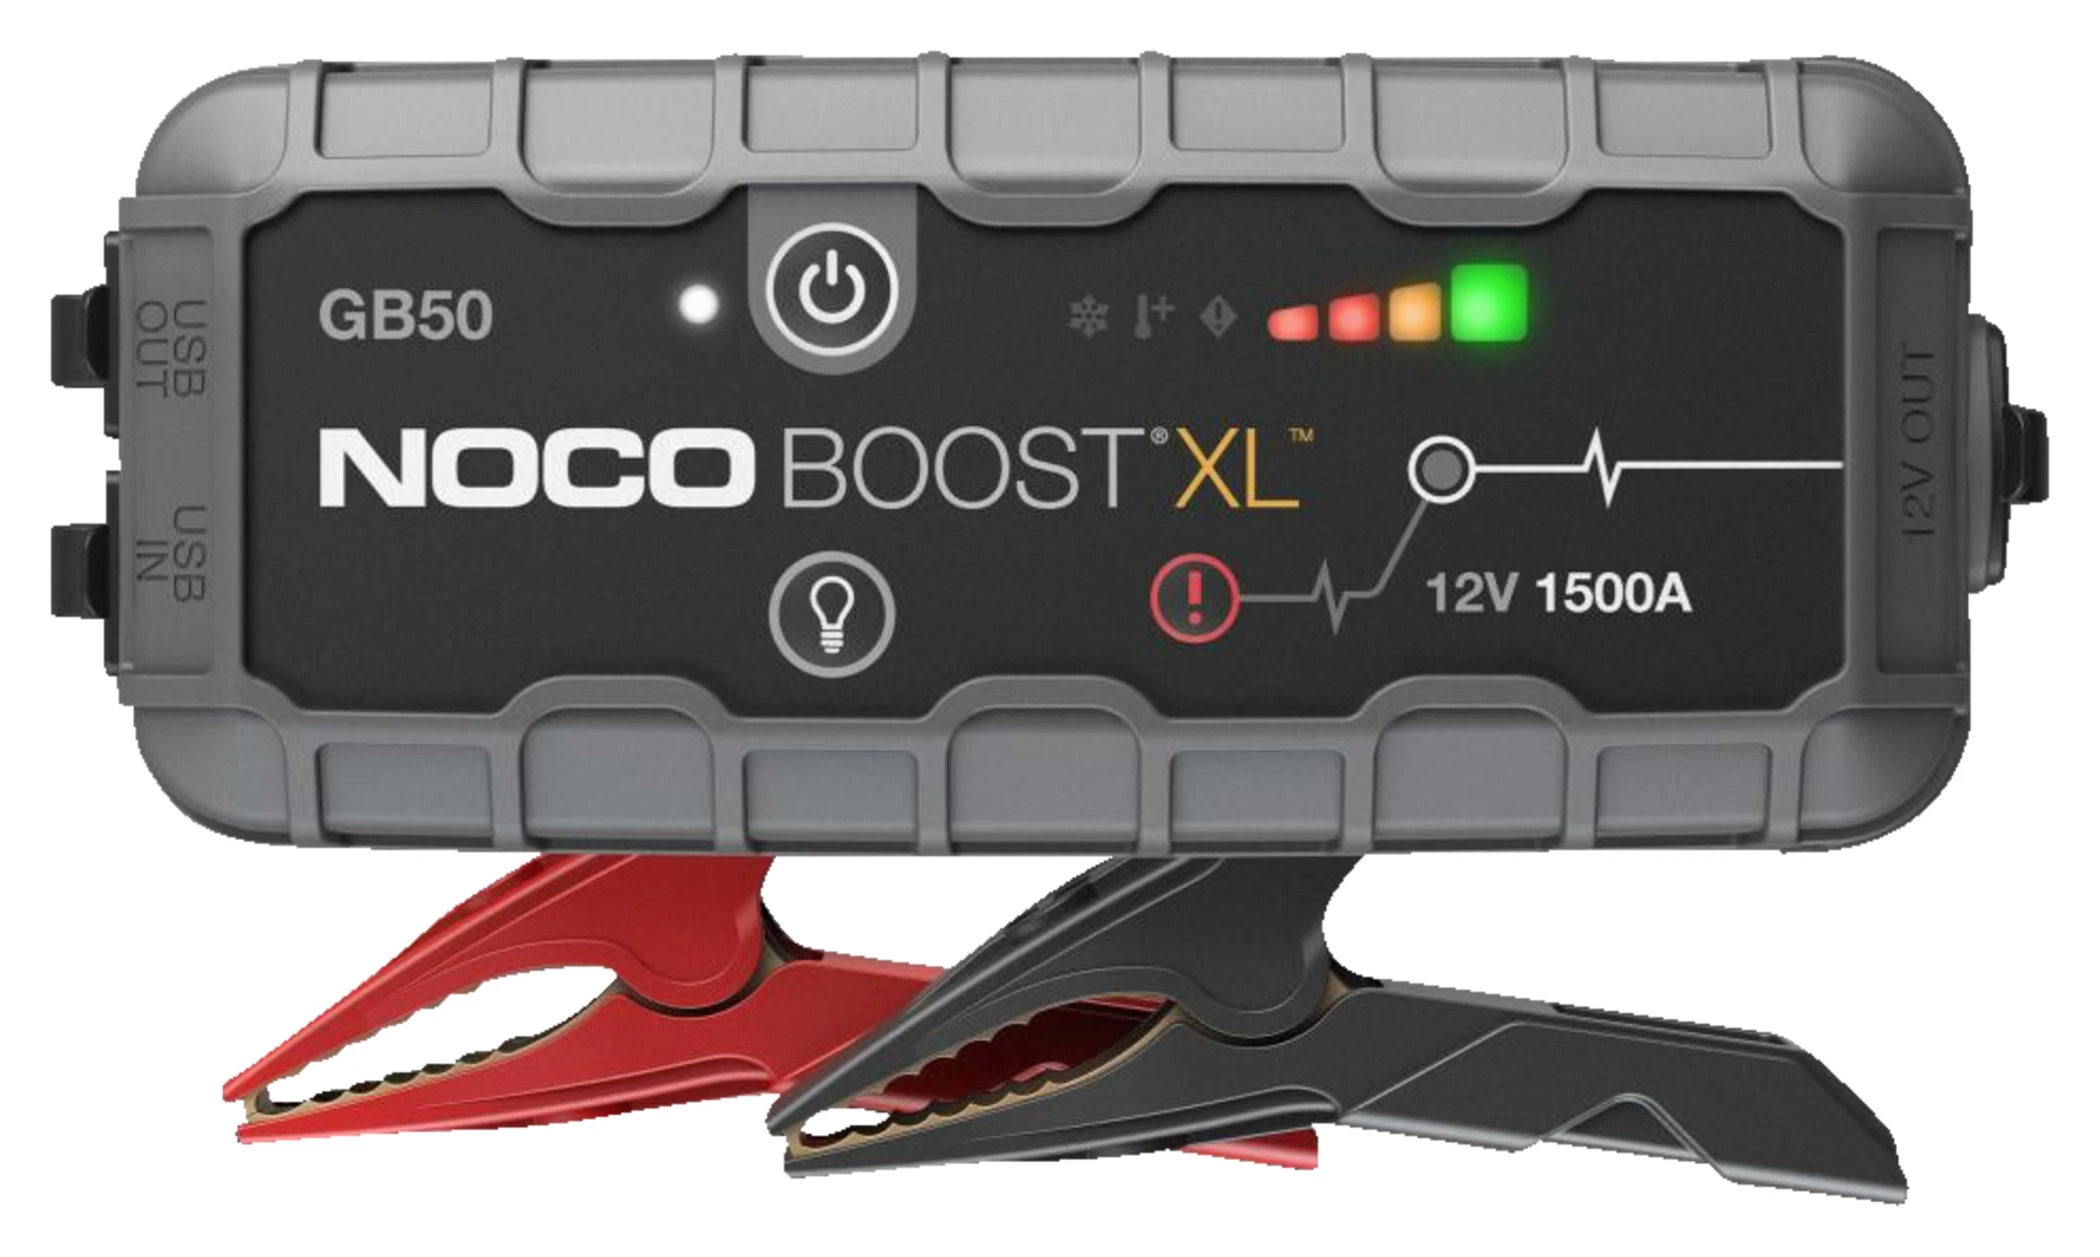 Noco NOCO GB50 BOOST XL STARTHILFE GERÄT 1500 A